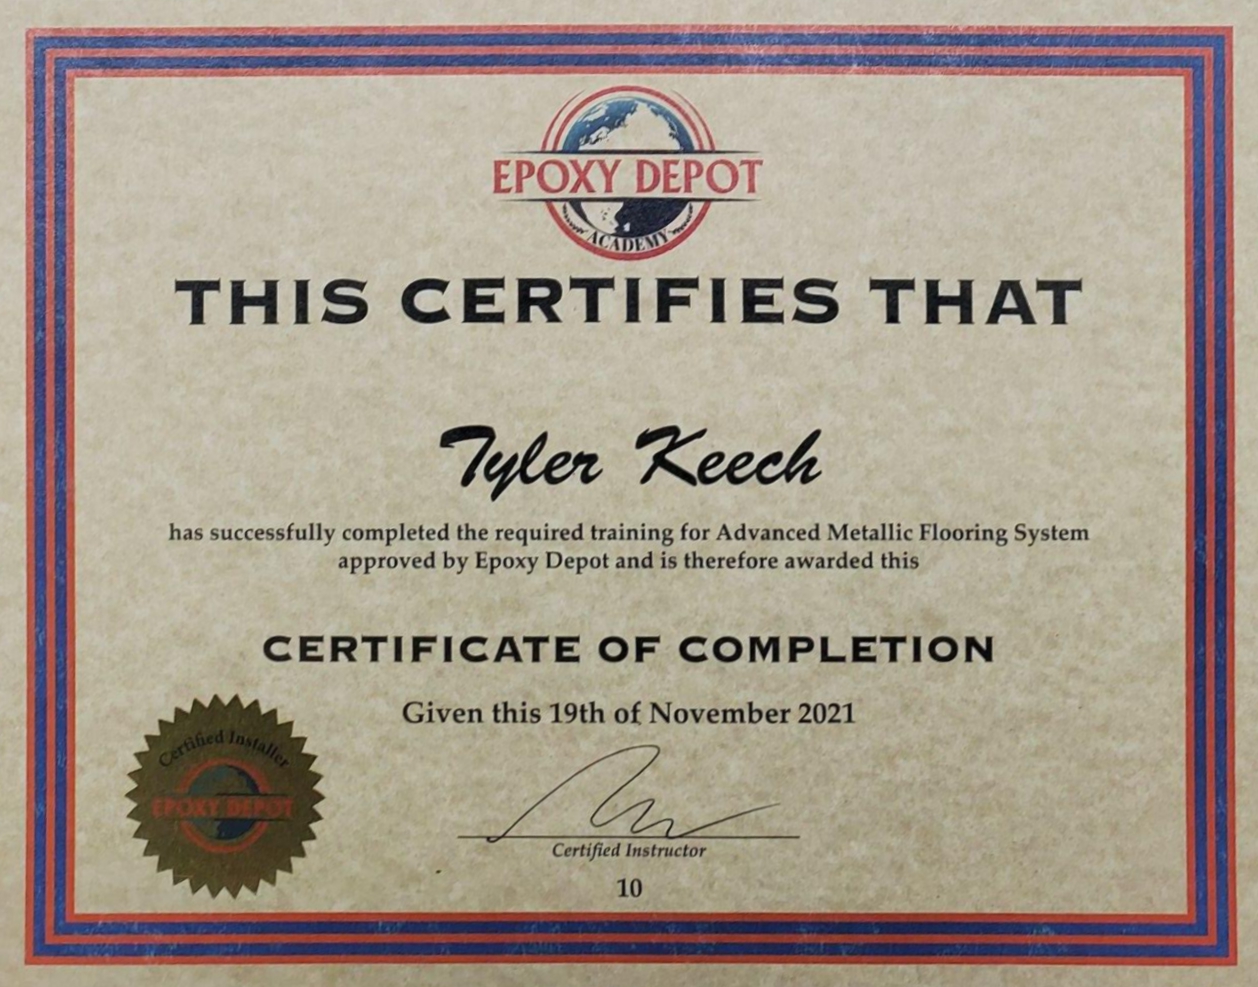 epoxy depot certificate tyler